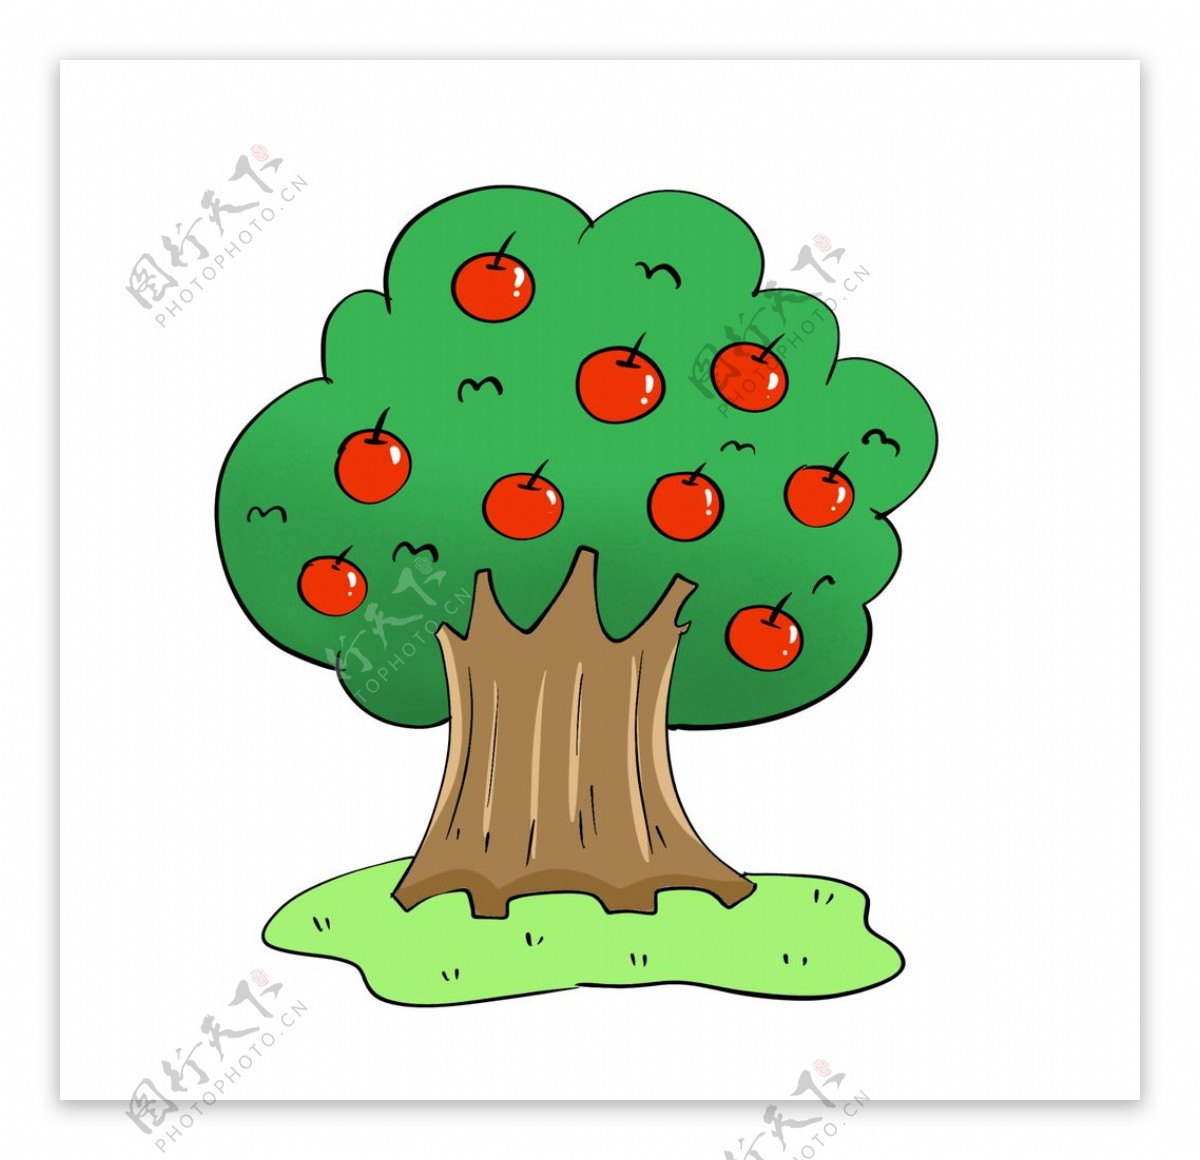 原创手绘水果苹果树图片